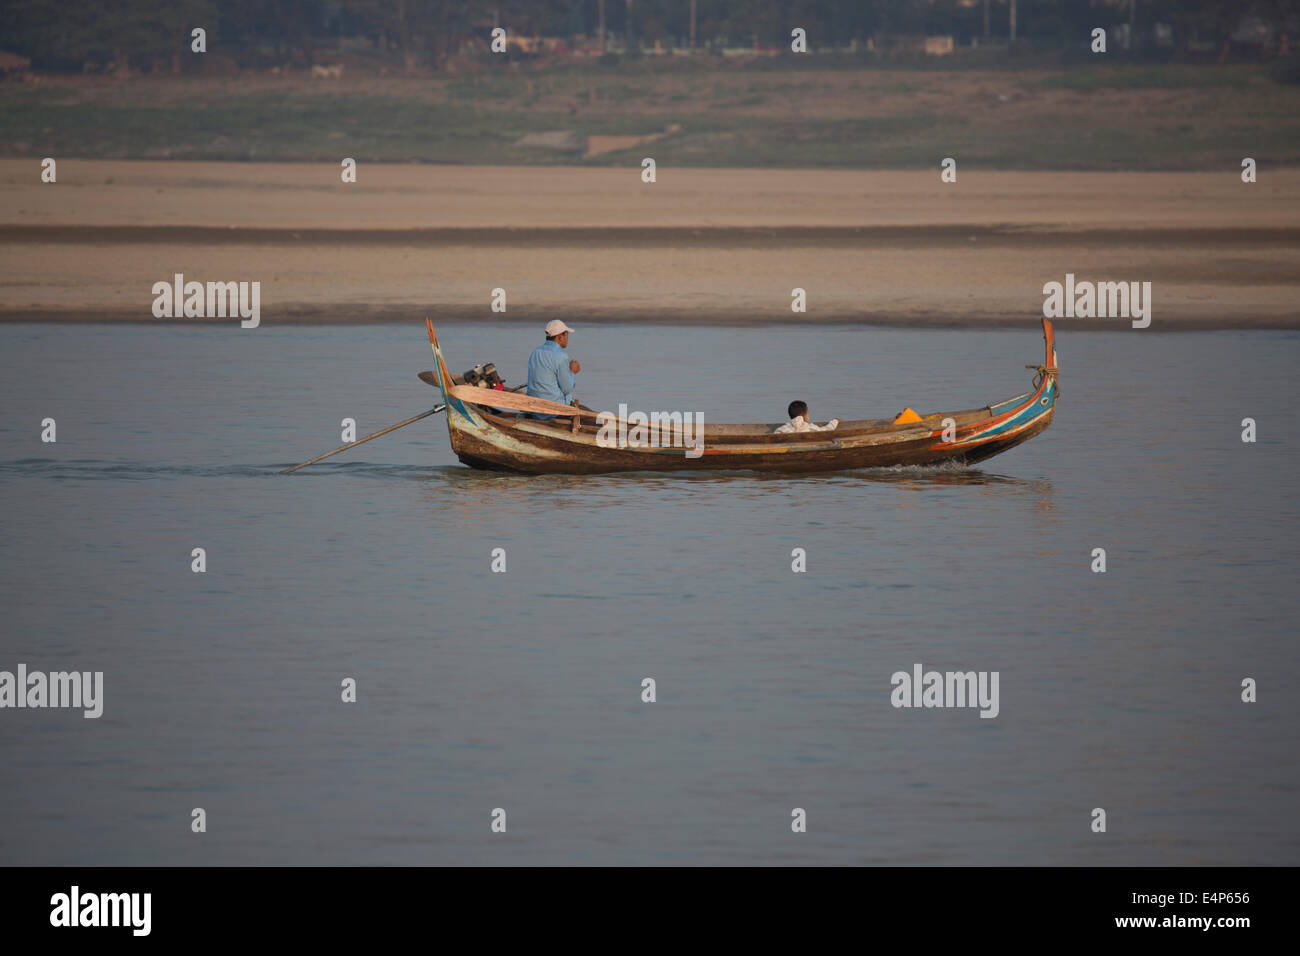 Uno stile tradizionale di imbarcazione utilizzata da persone sul fiume Irrawaddy in Birmania/Myanmar. Foto Stock